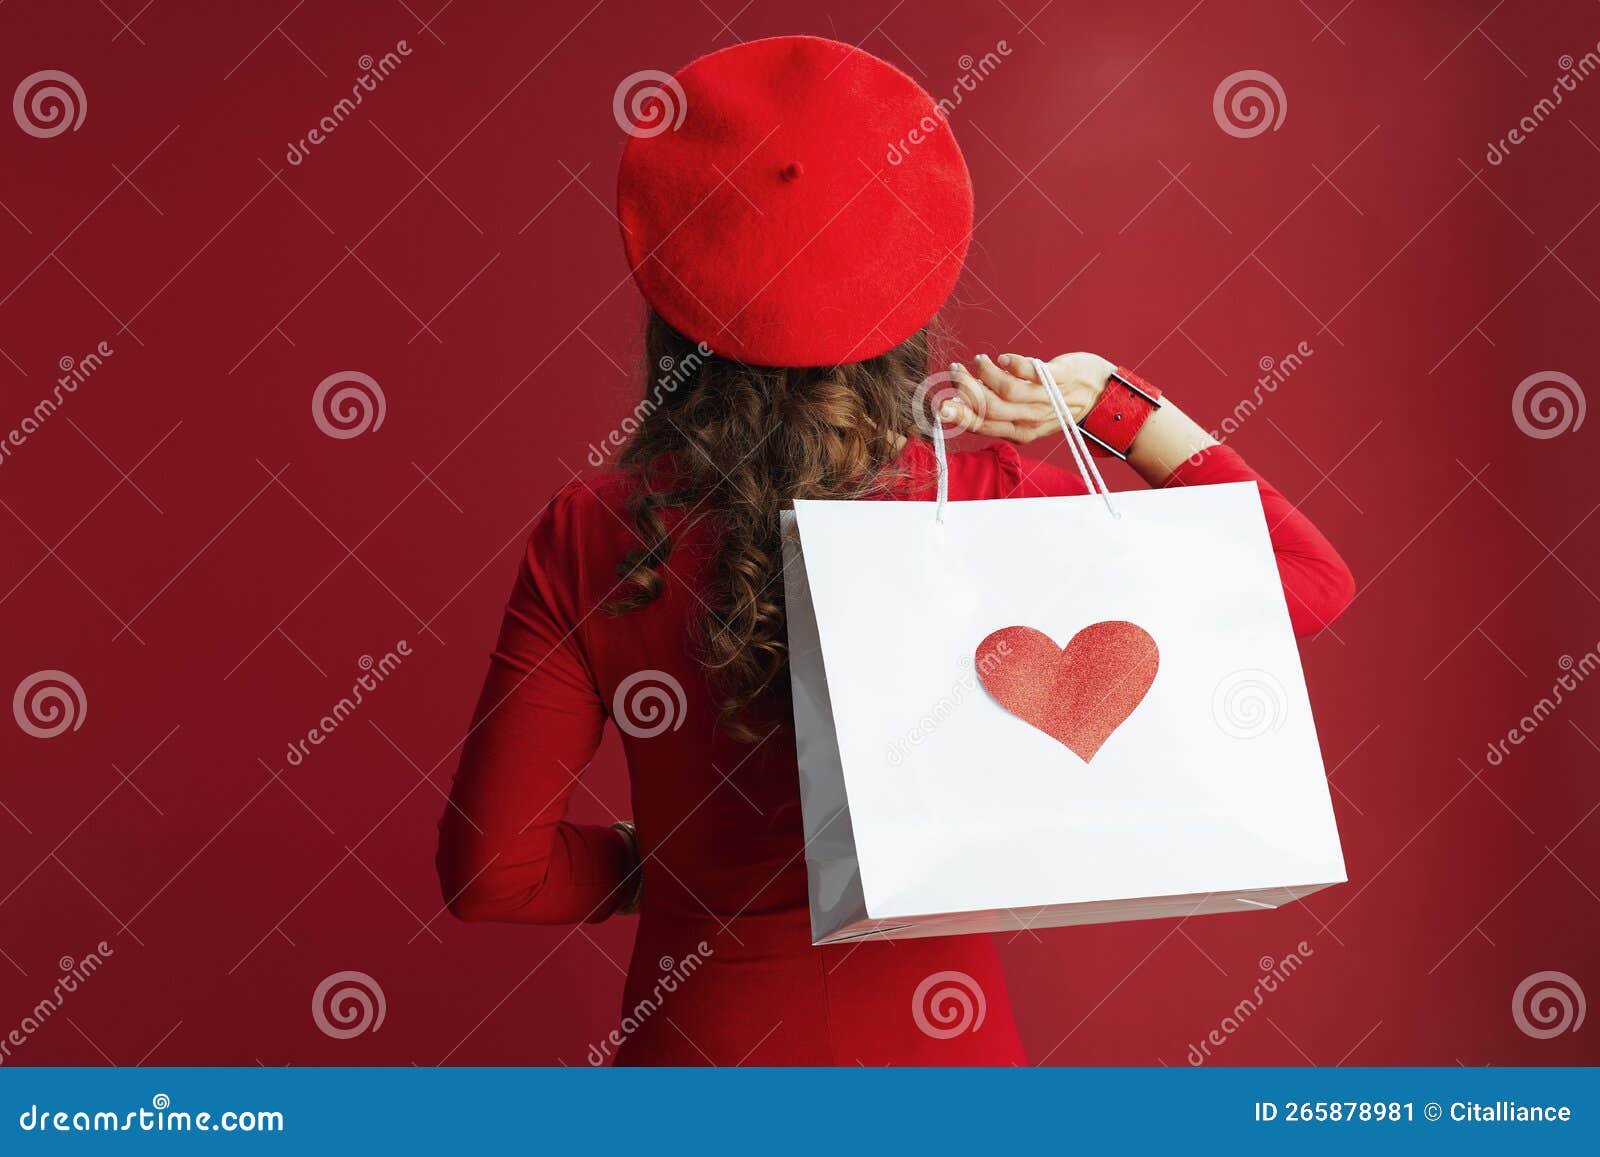 Thème De La Saint-valentin Montrant Une Femme En Robe Rouge